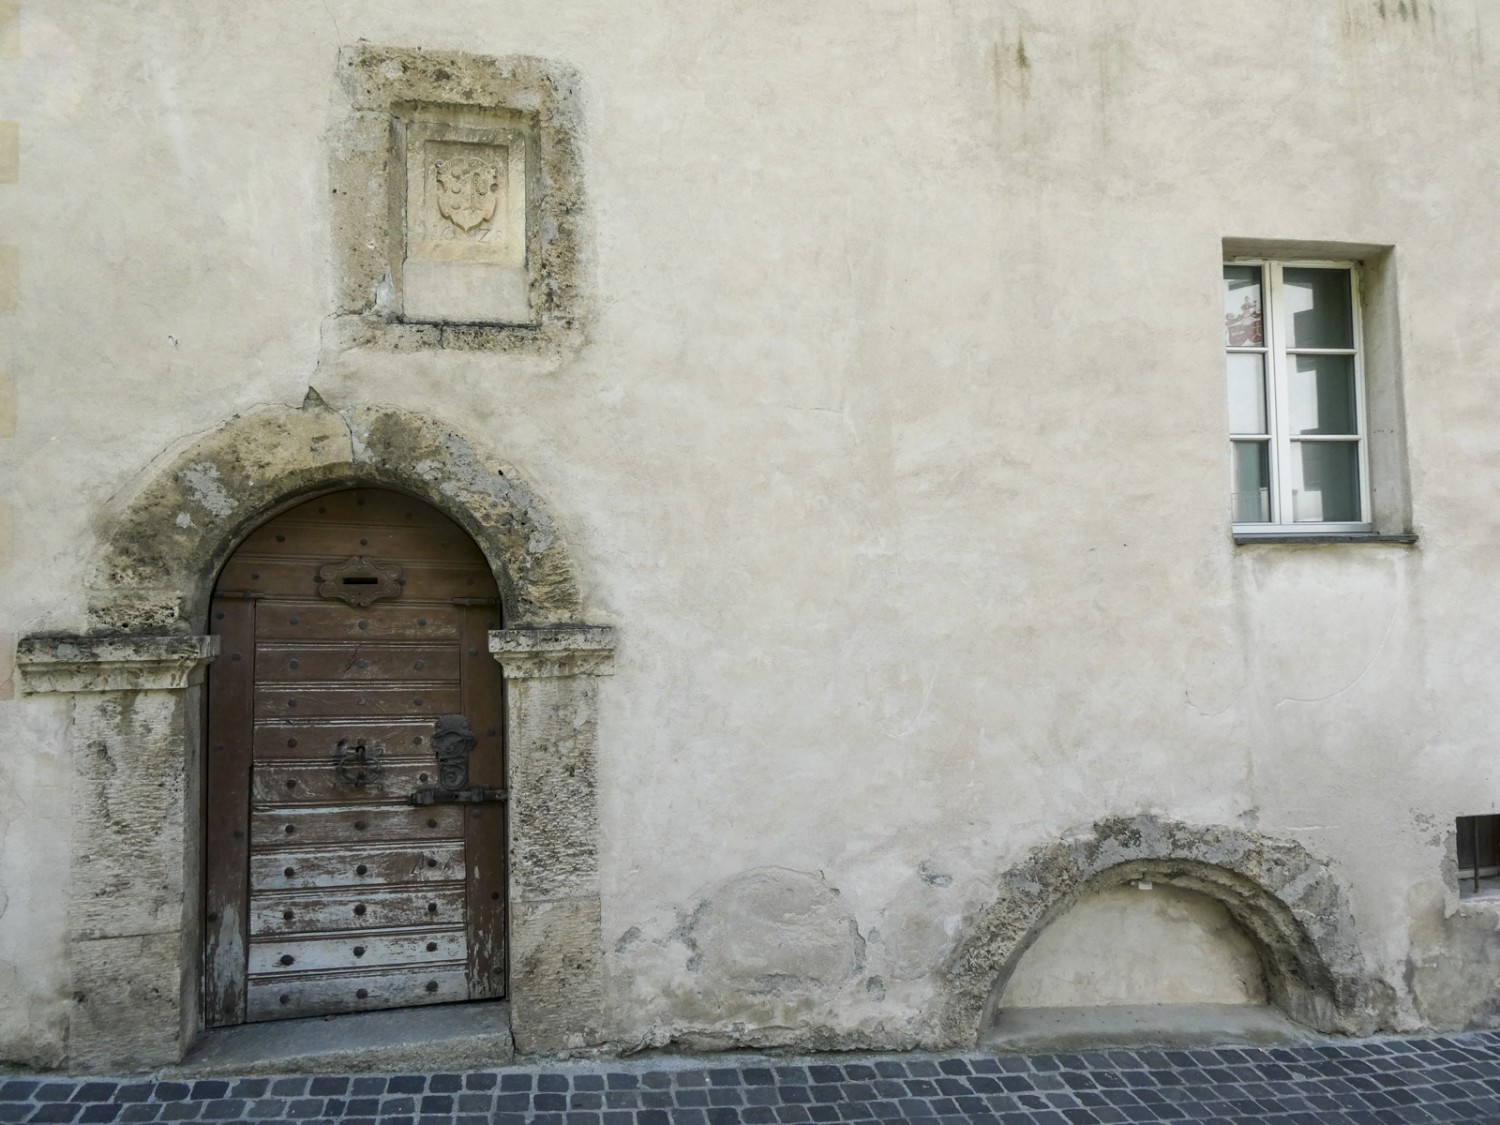 La maison Maxen et la plus vieille boîte aux lettres de Suisse. A droite, l’ancien arc de la fenêtre qui a été comblé. Photo: Rémy Kappeler